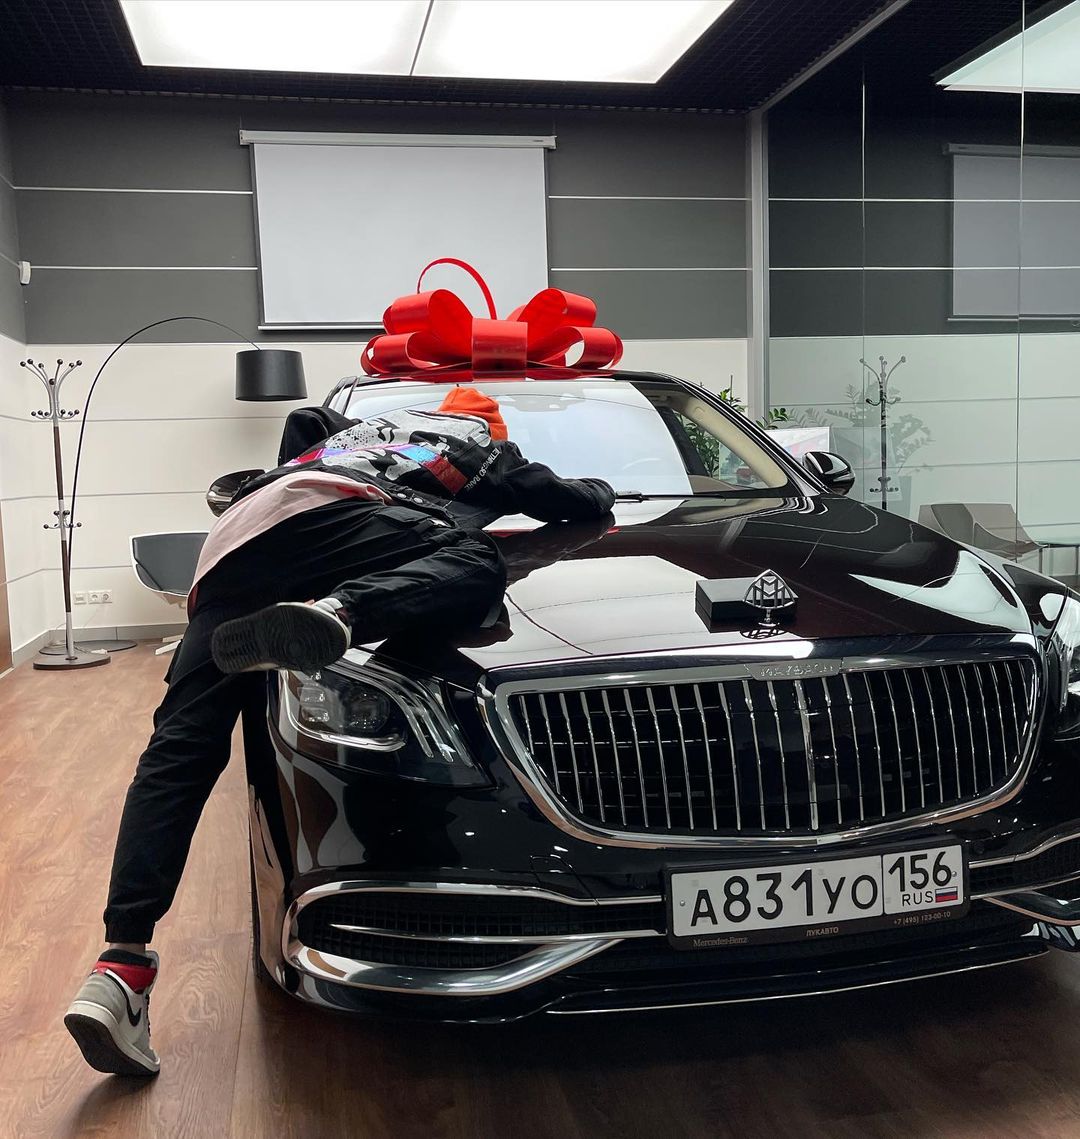 Даня Милохин купил люксовый автомобиль стоимостью свыше 10 миллионов рублей